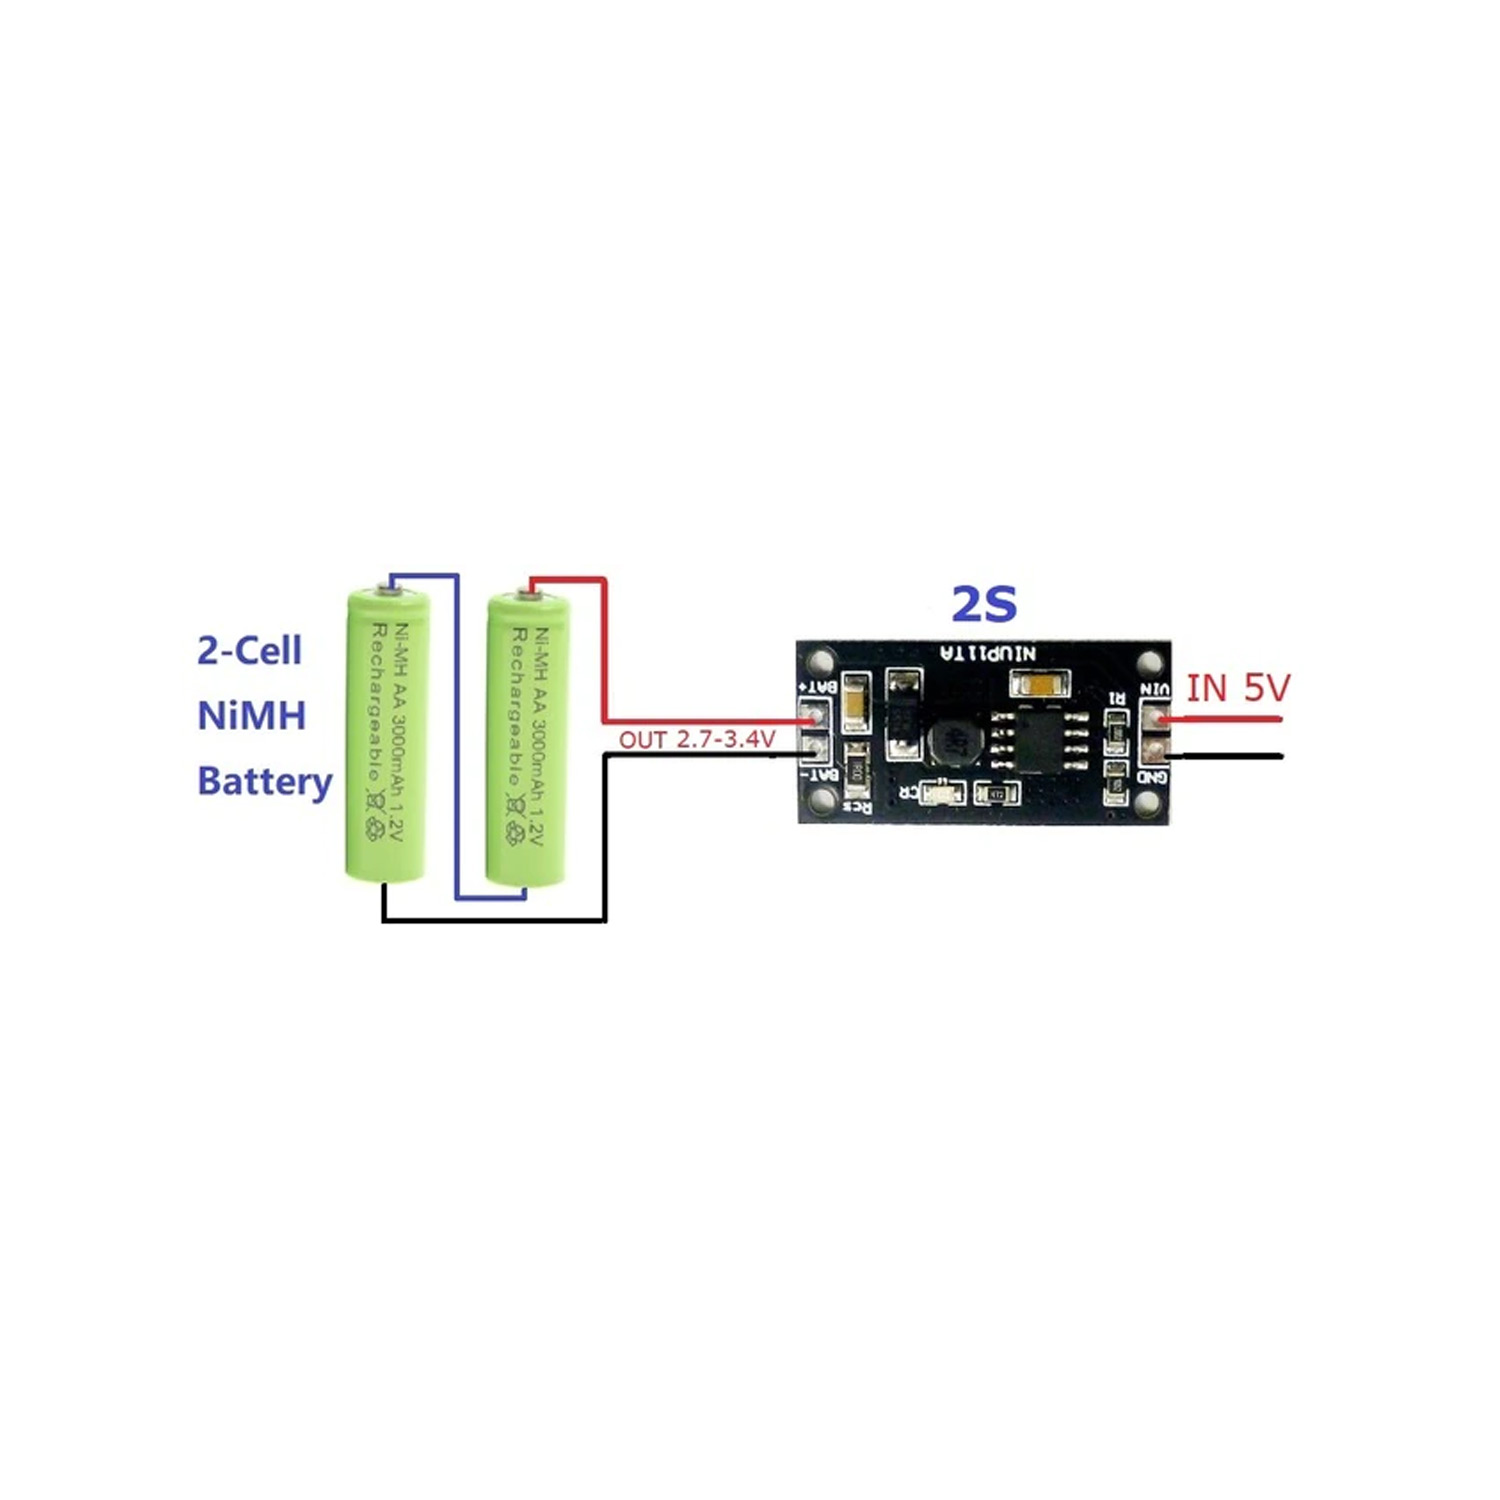 Oplaadmodule NiMH-batterijen NIUP11TA (2 batterijen)